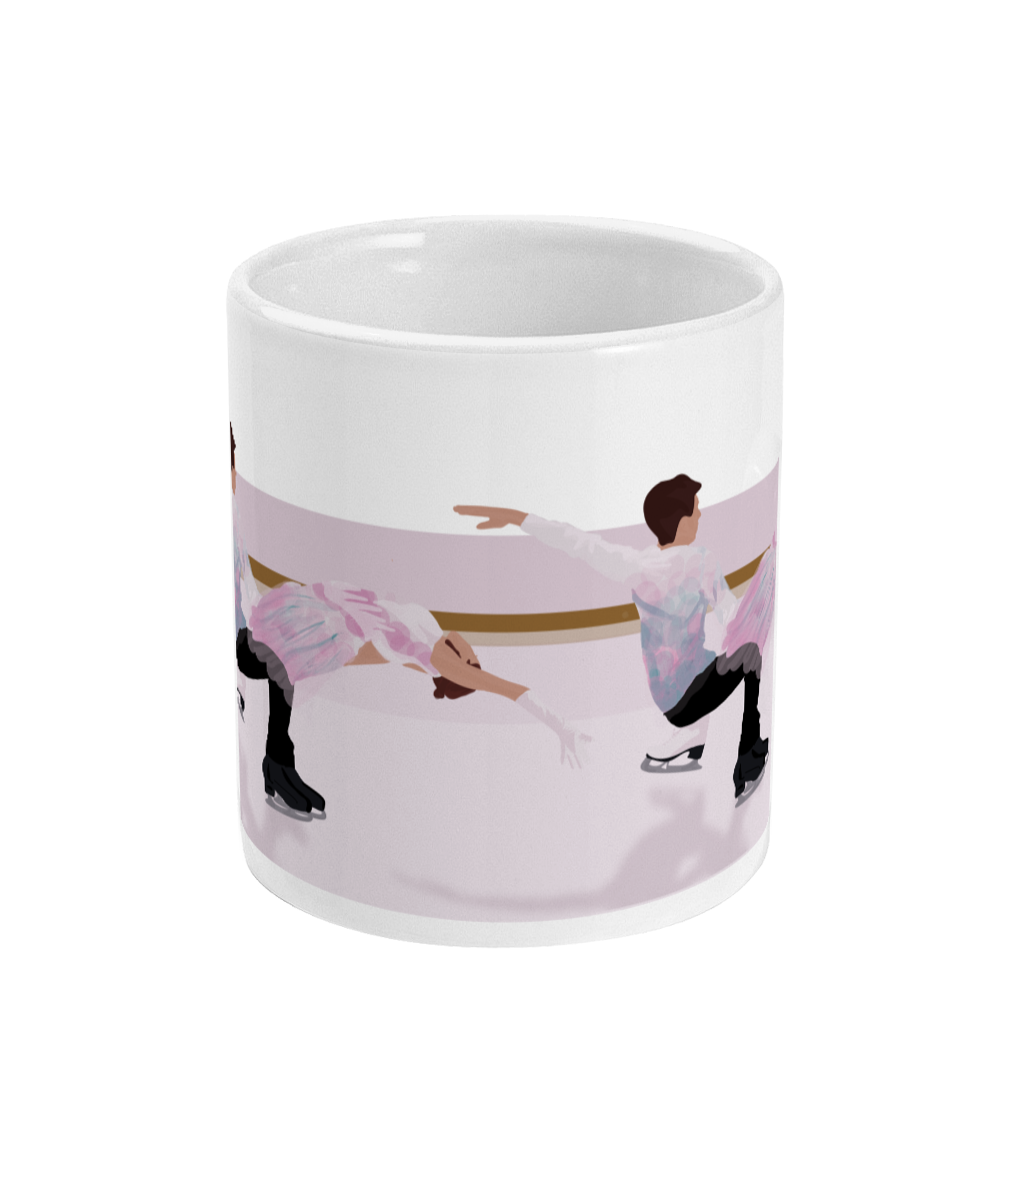 Skating cup or mug "Skater couple" - Customizable